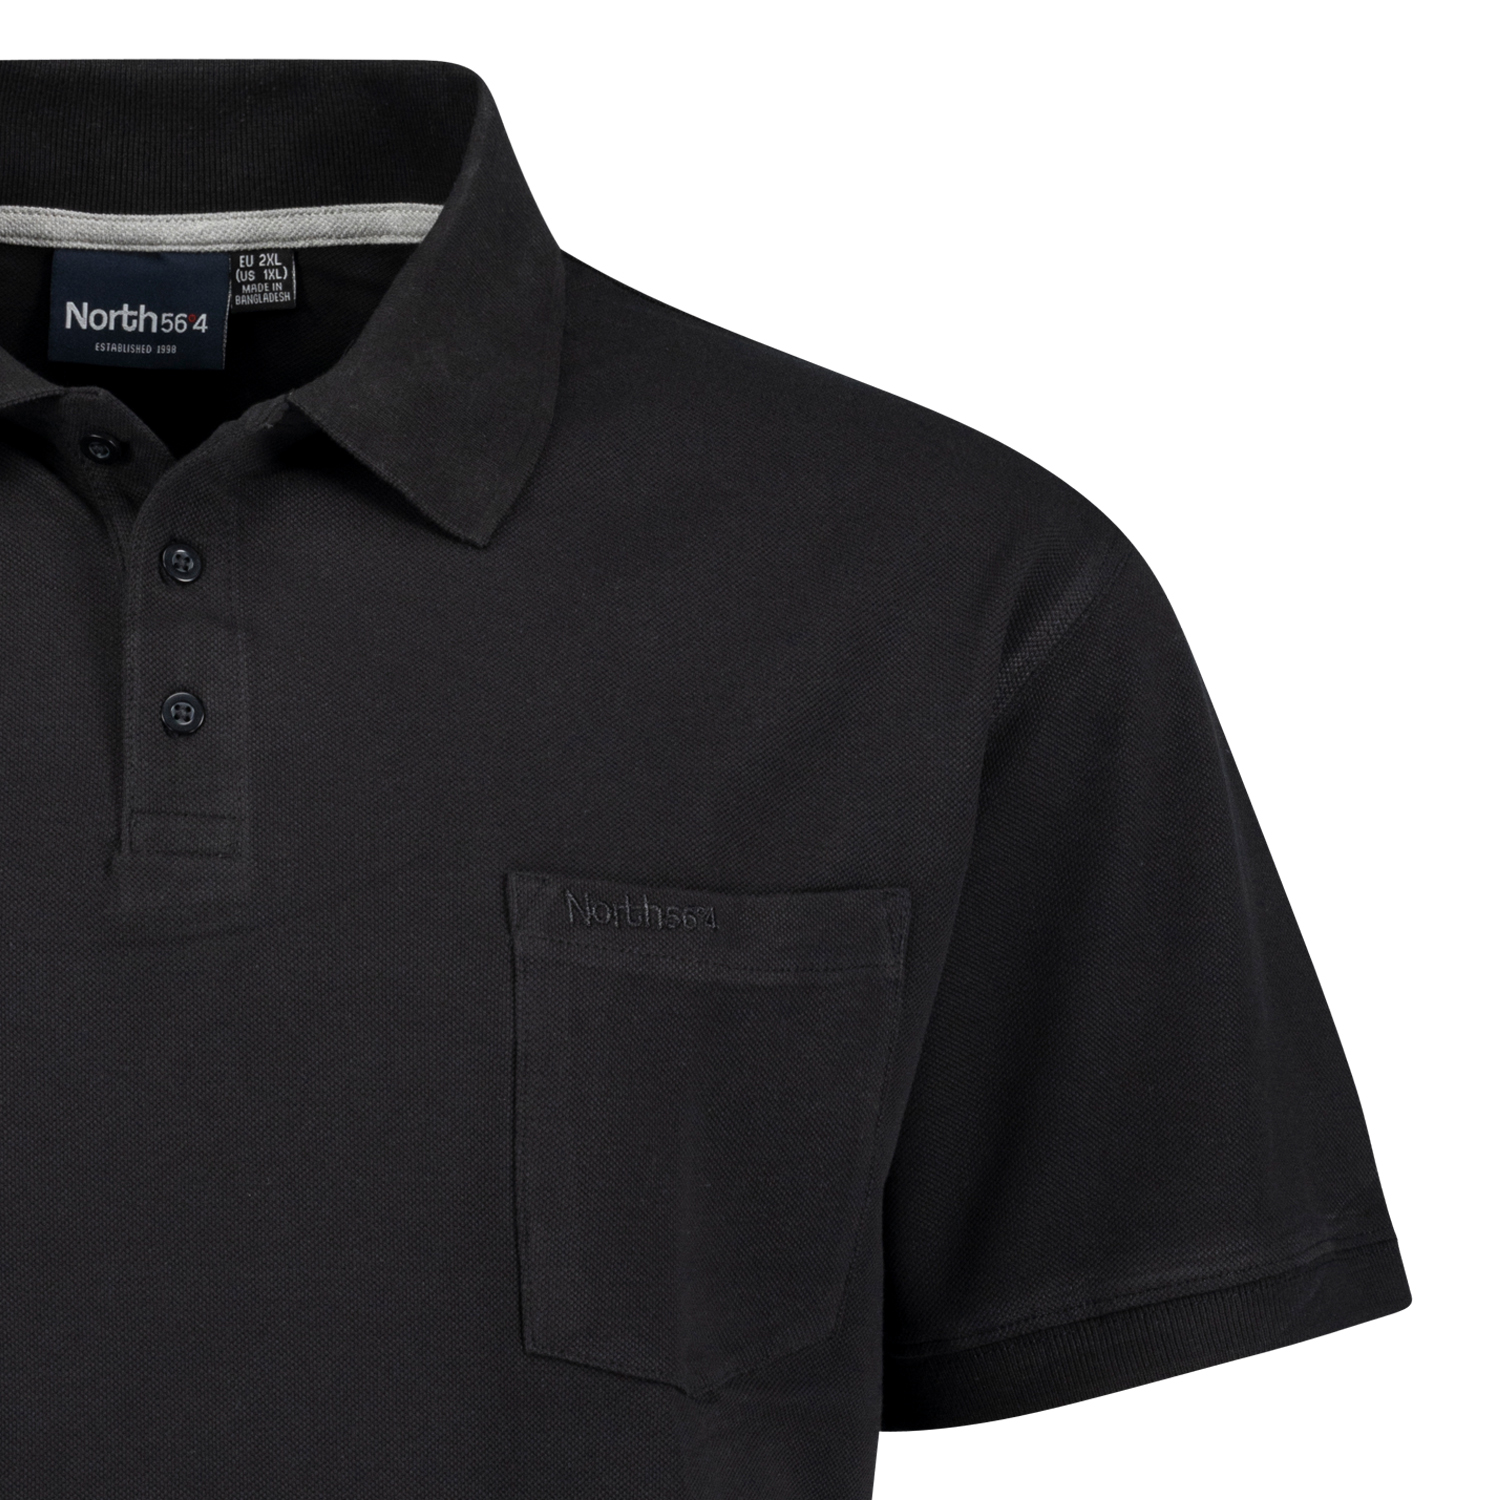 Schwarzes Pique Poloshirt von Greyes/North 56°4 in Übergrößen bis 8XL